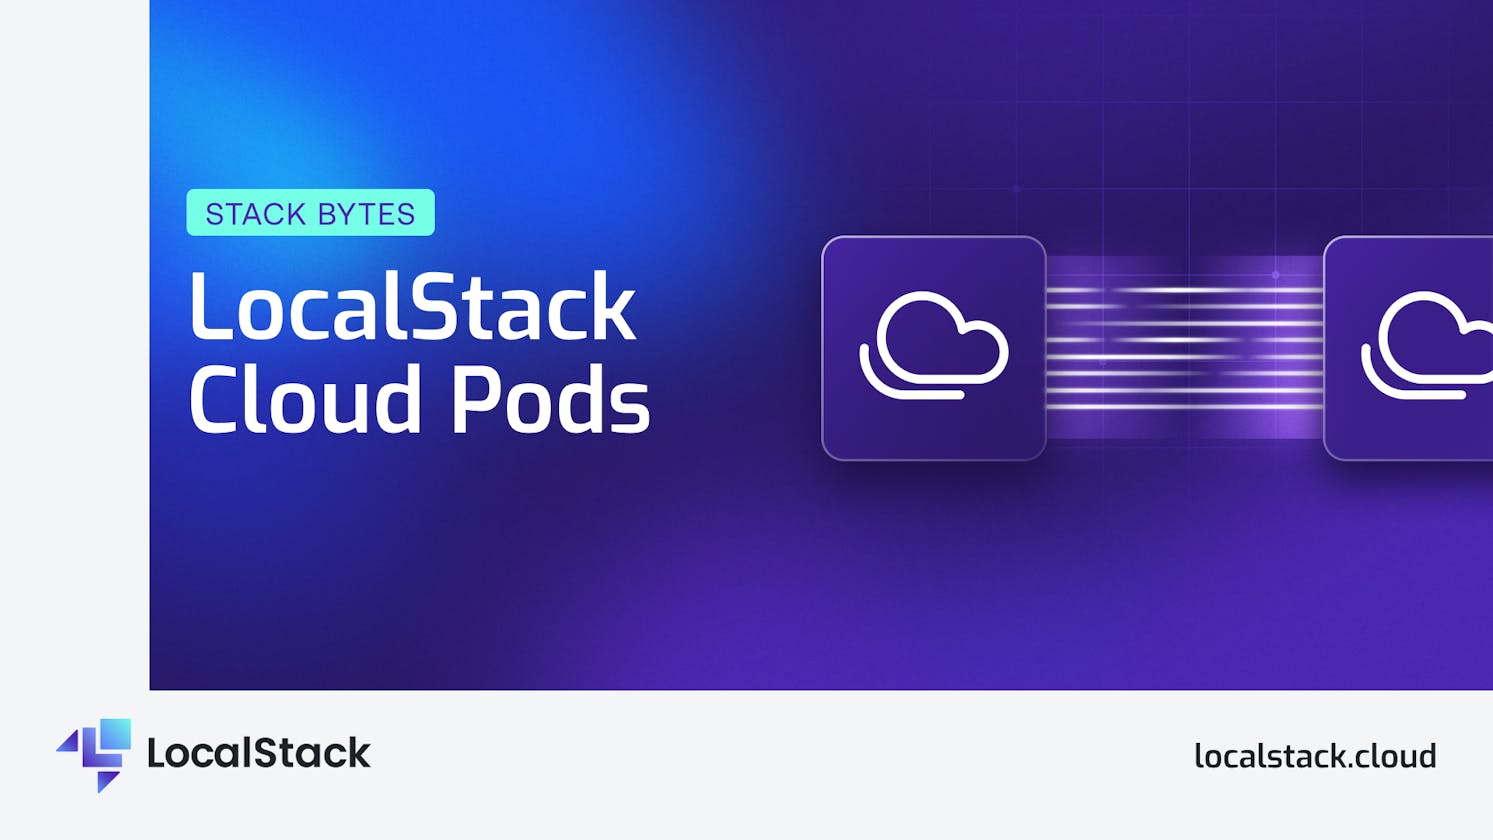 LocalStack Cloud Pods